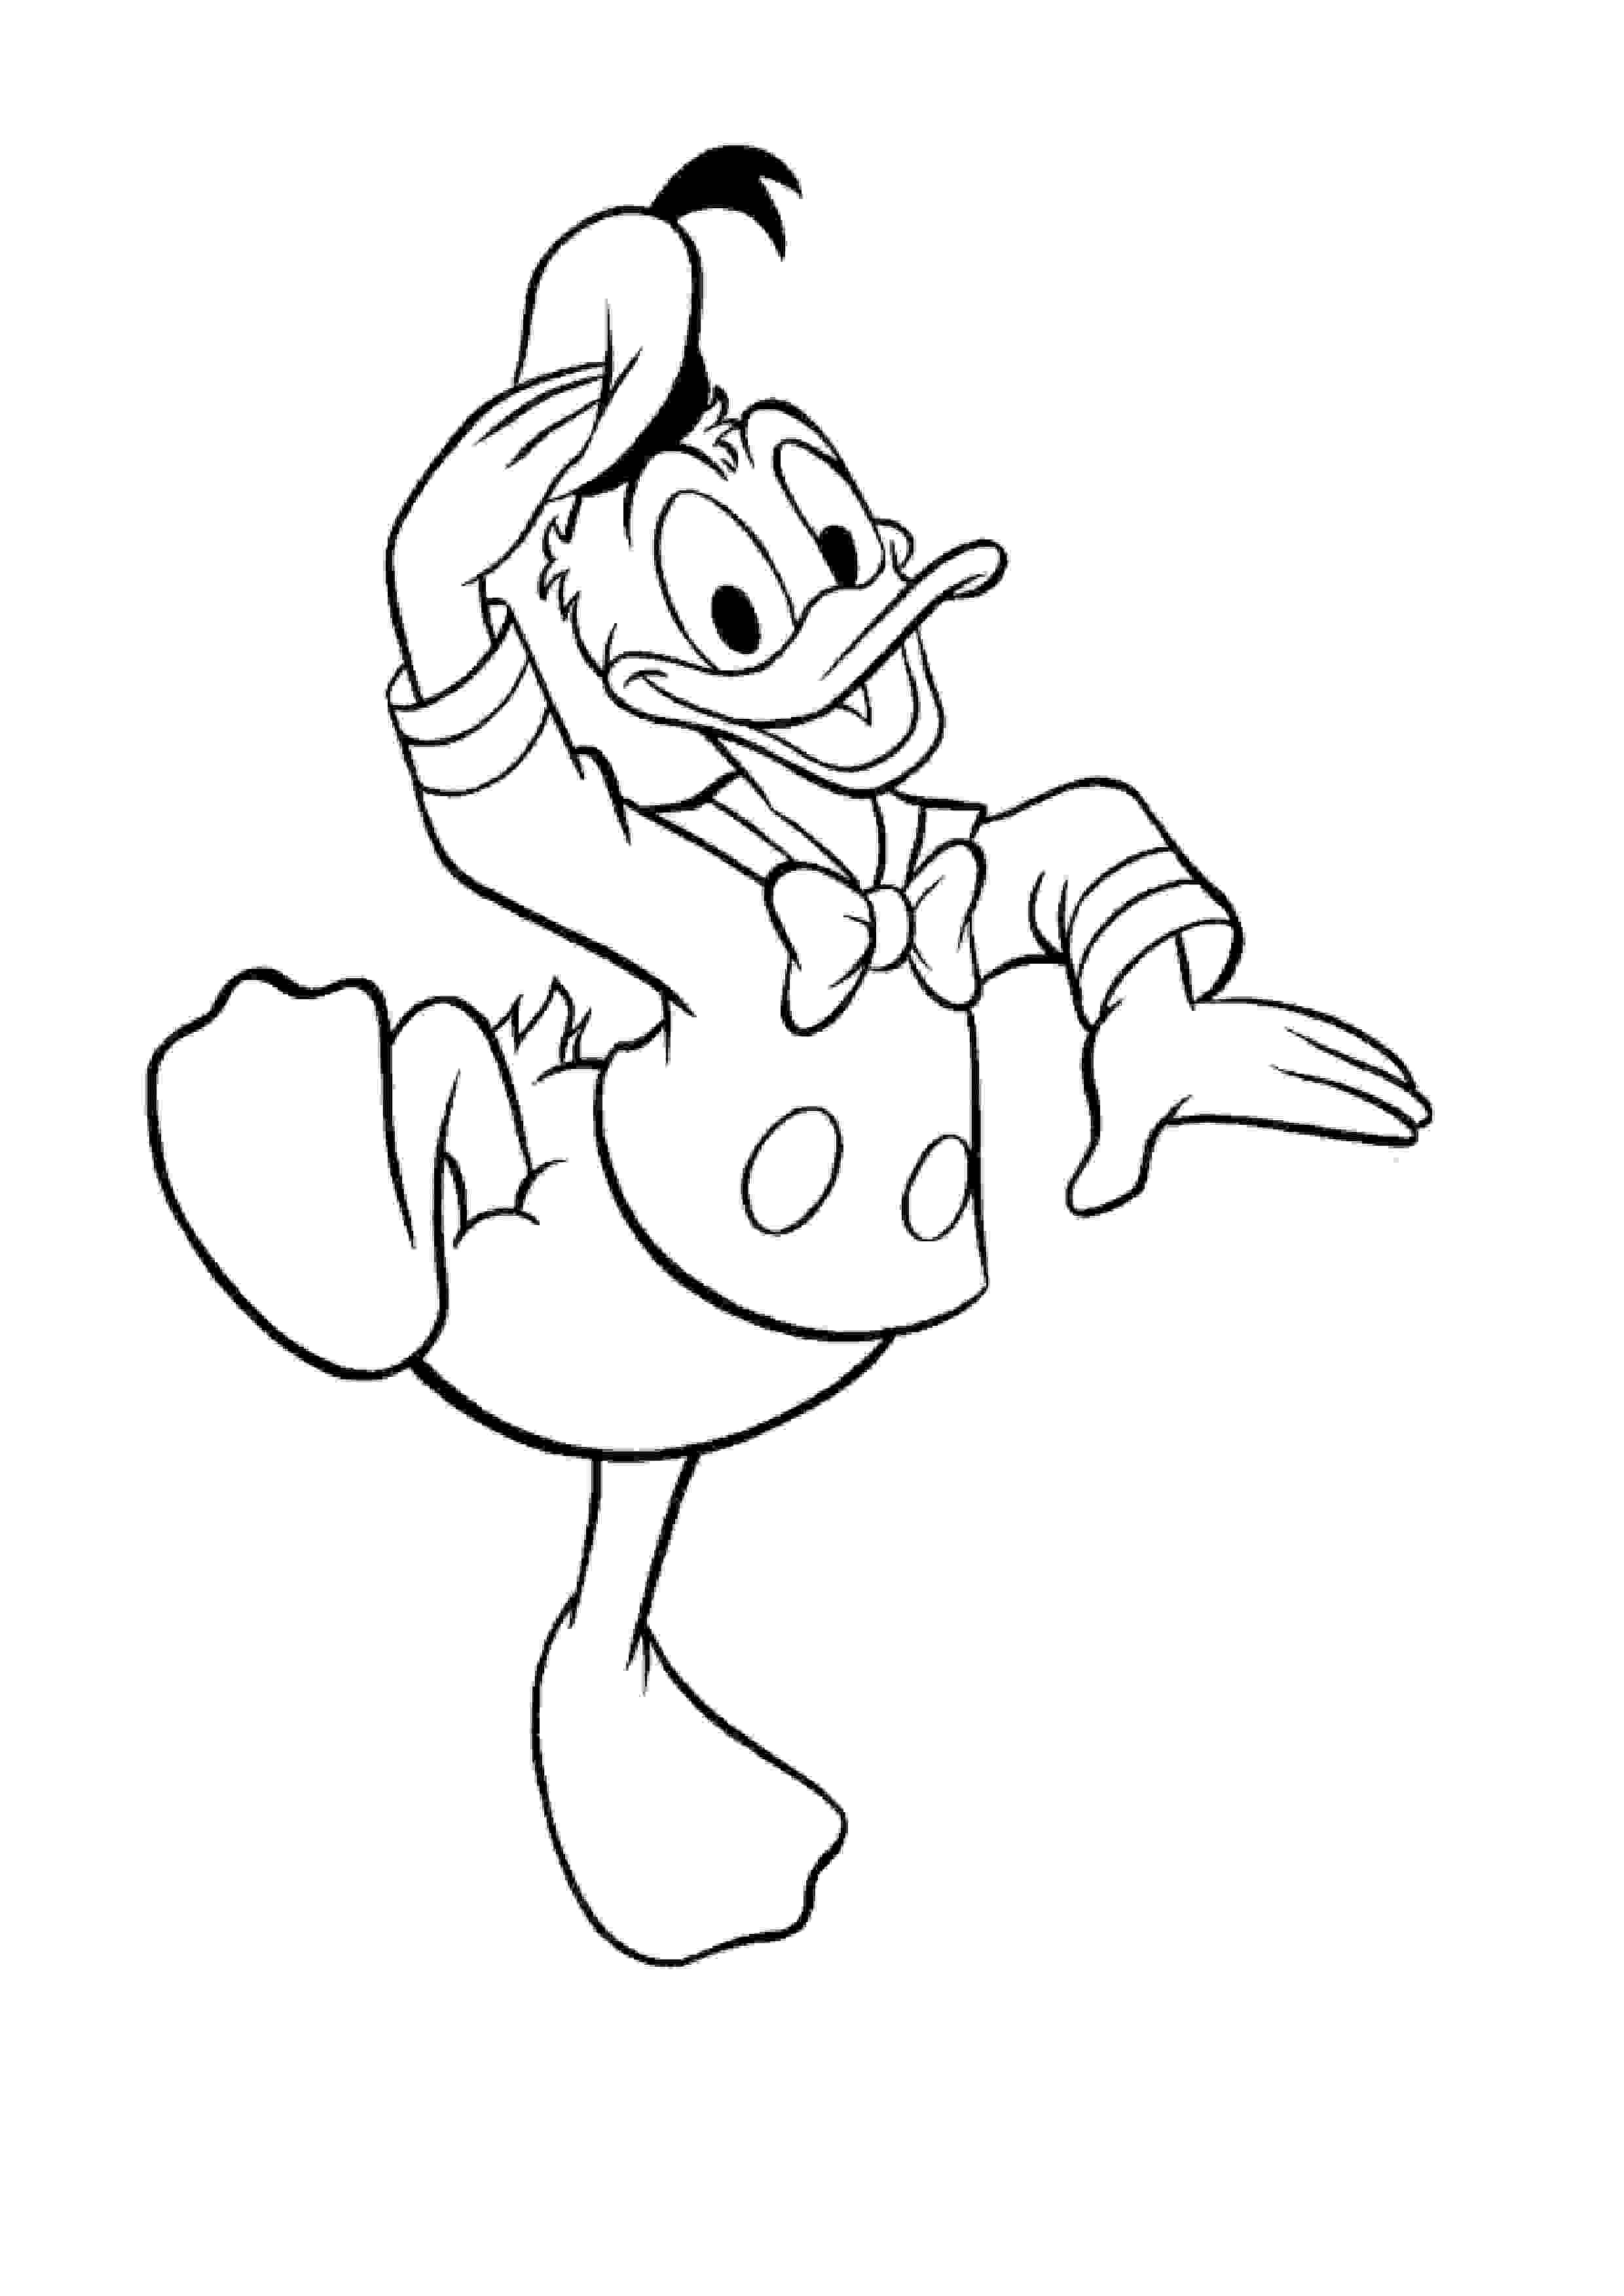 Donald pulando de alegria